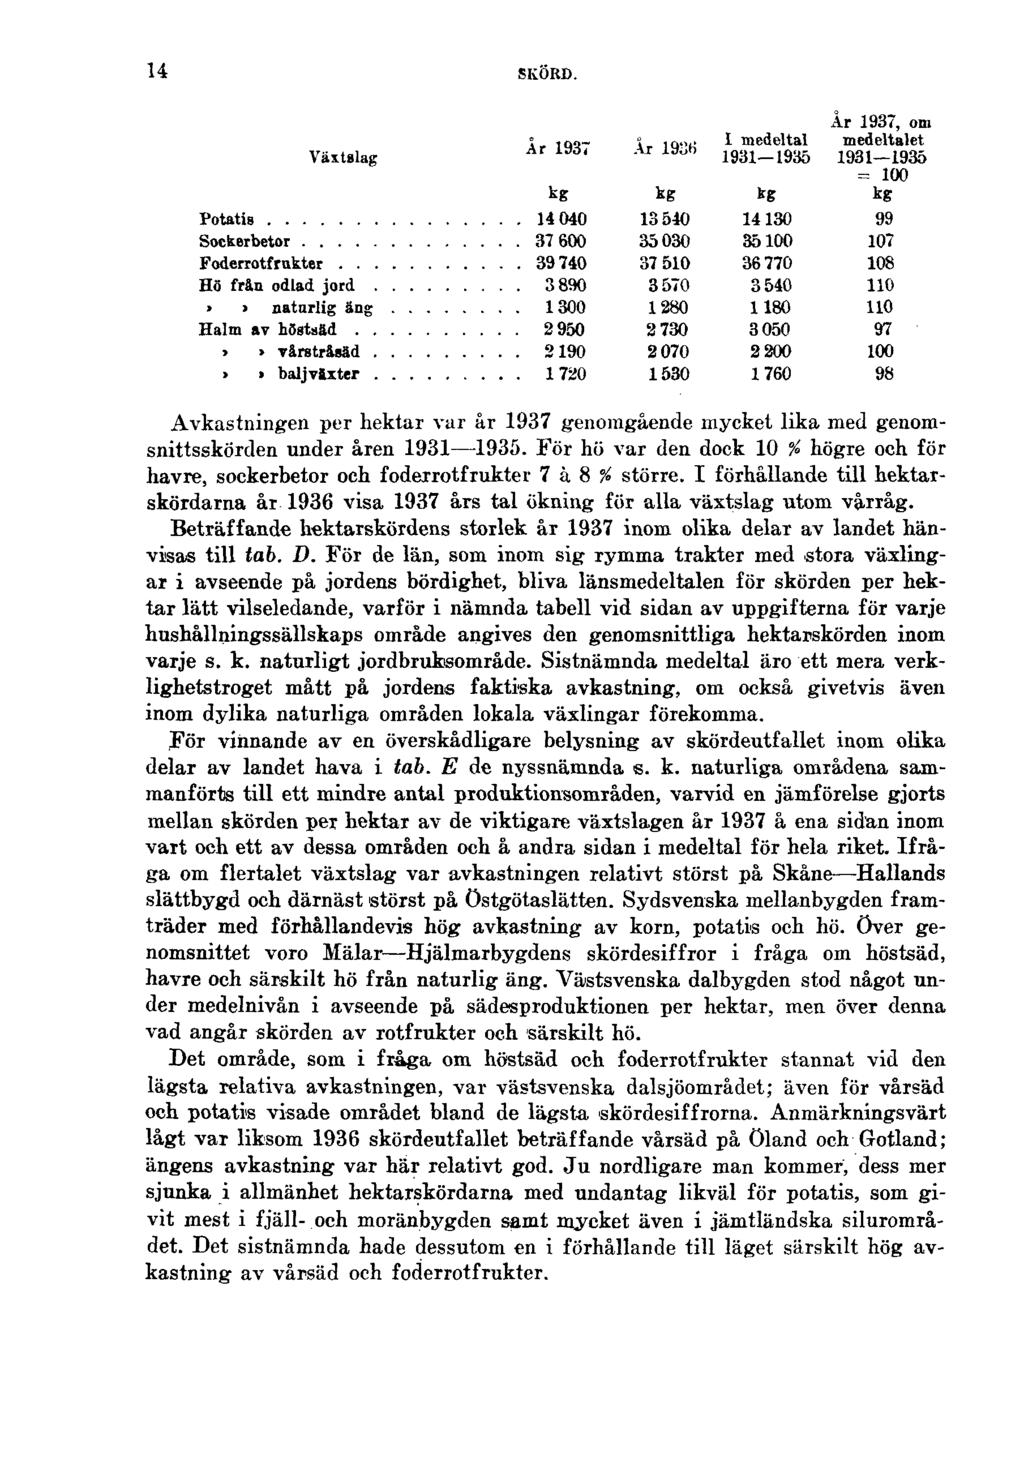 14 SKÖRD. Avkastningen per hektar var år 1937 genomgående mycket lika med genomsnittsskörden under åren 1931 1935.